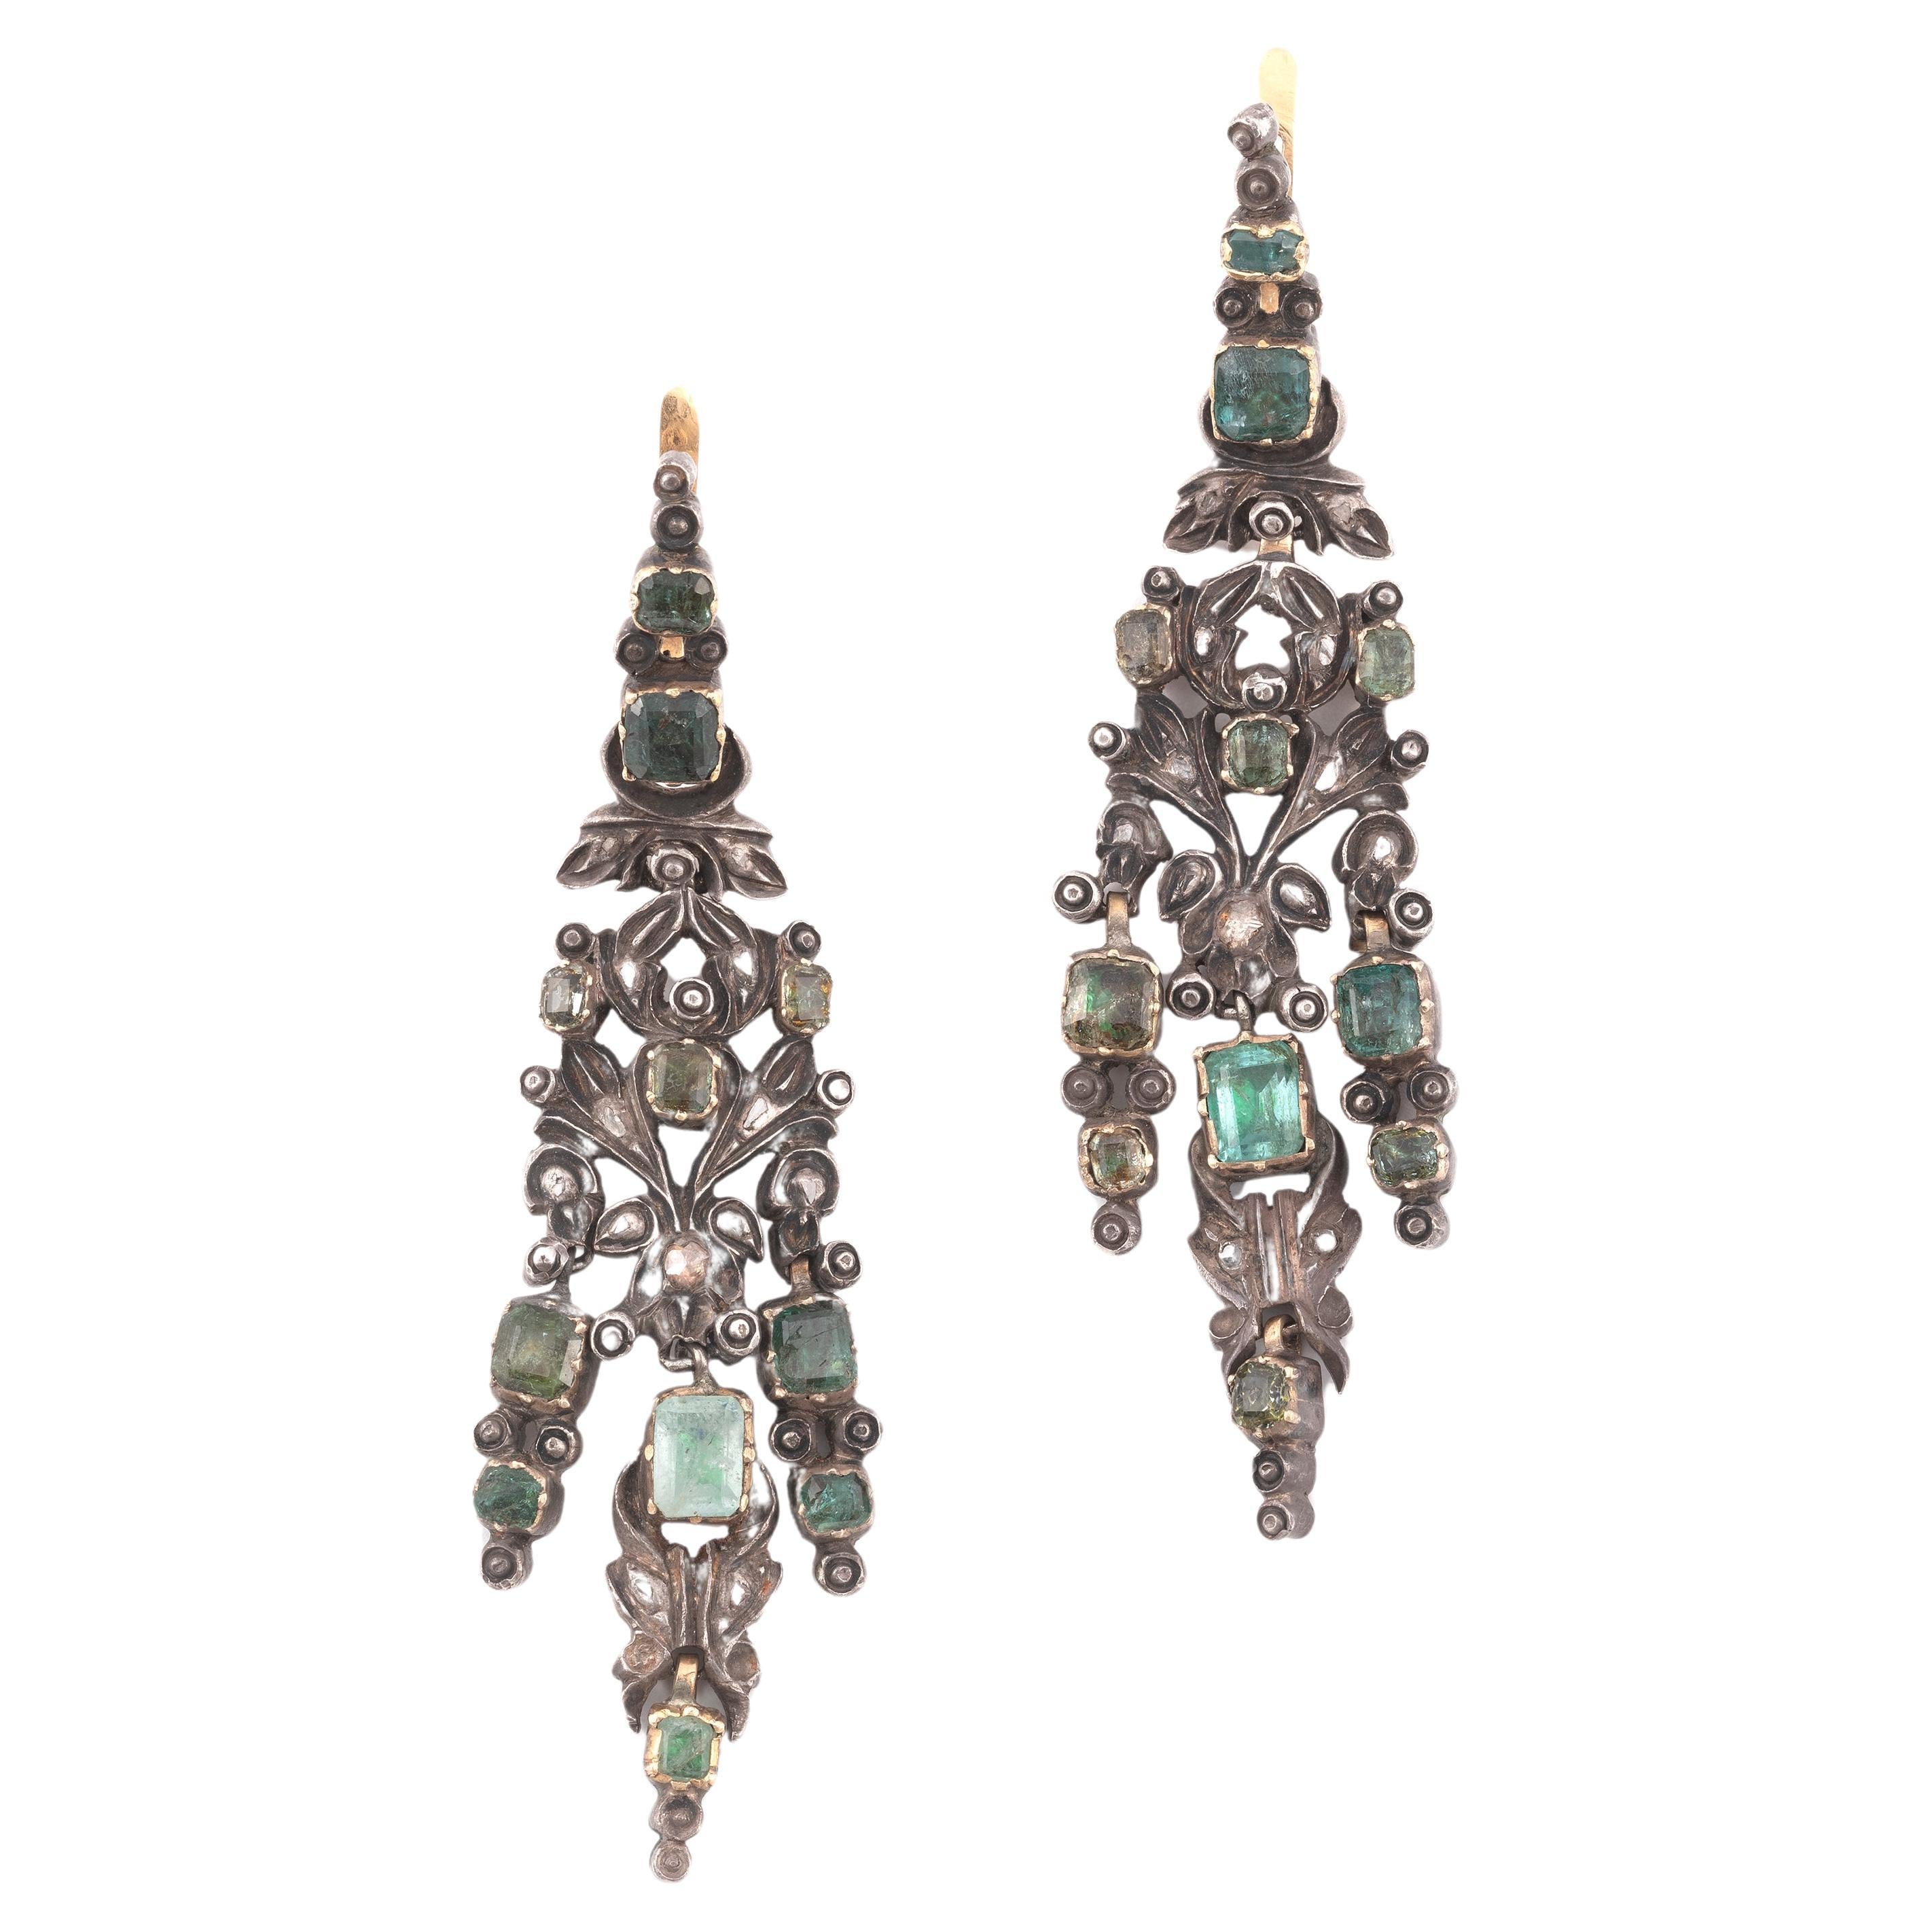 Paar Smaragd- und Diamant-Anhänger-Ohrringe aus dem späten 18. Jahrhundert, wahrscheinlich iberisch